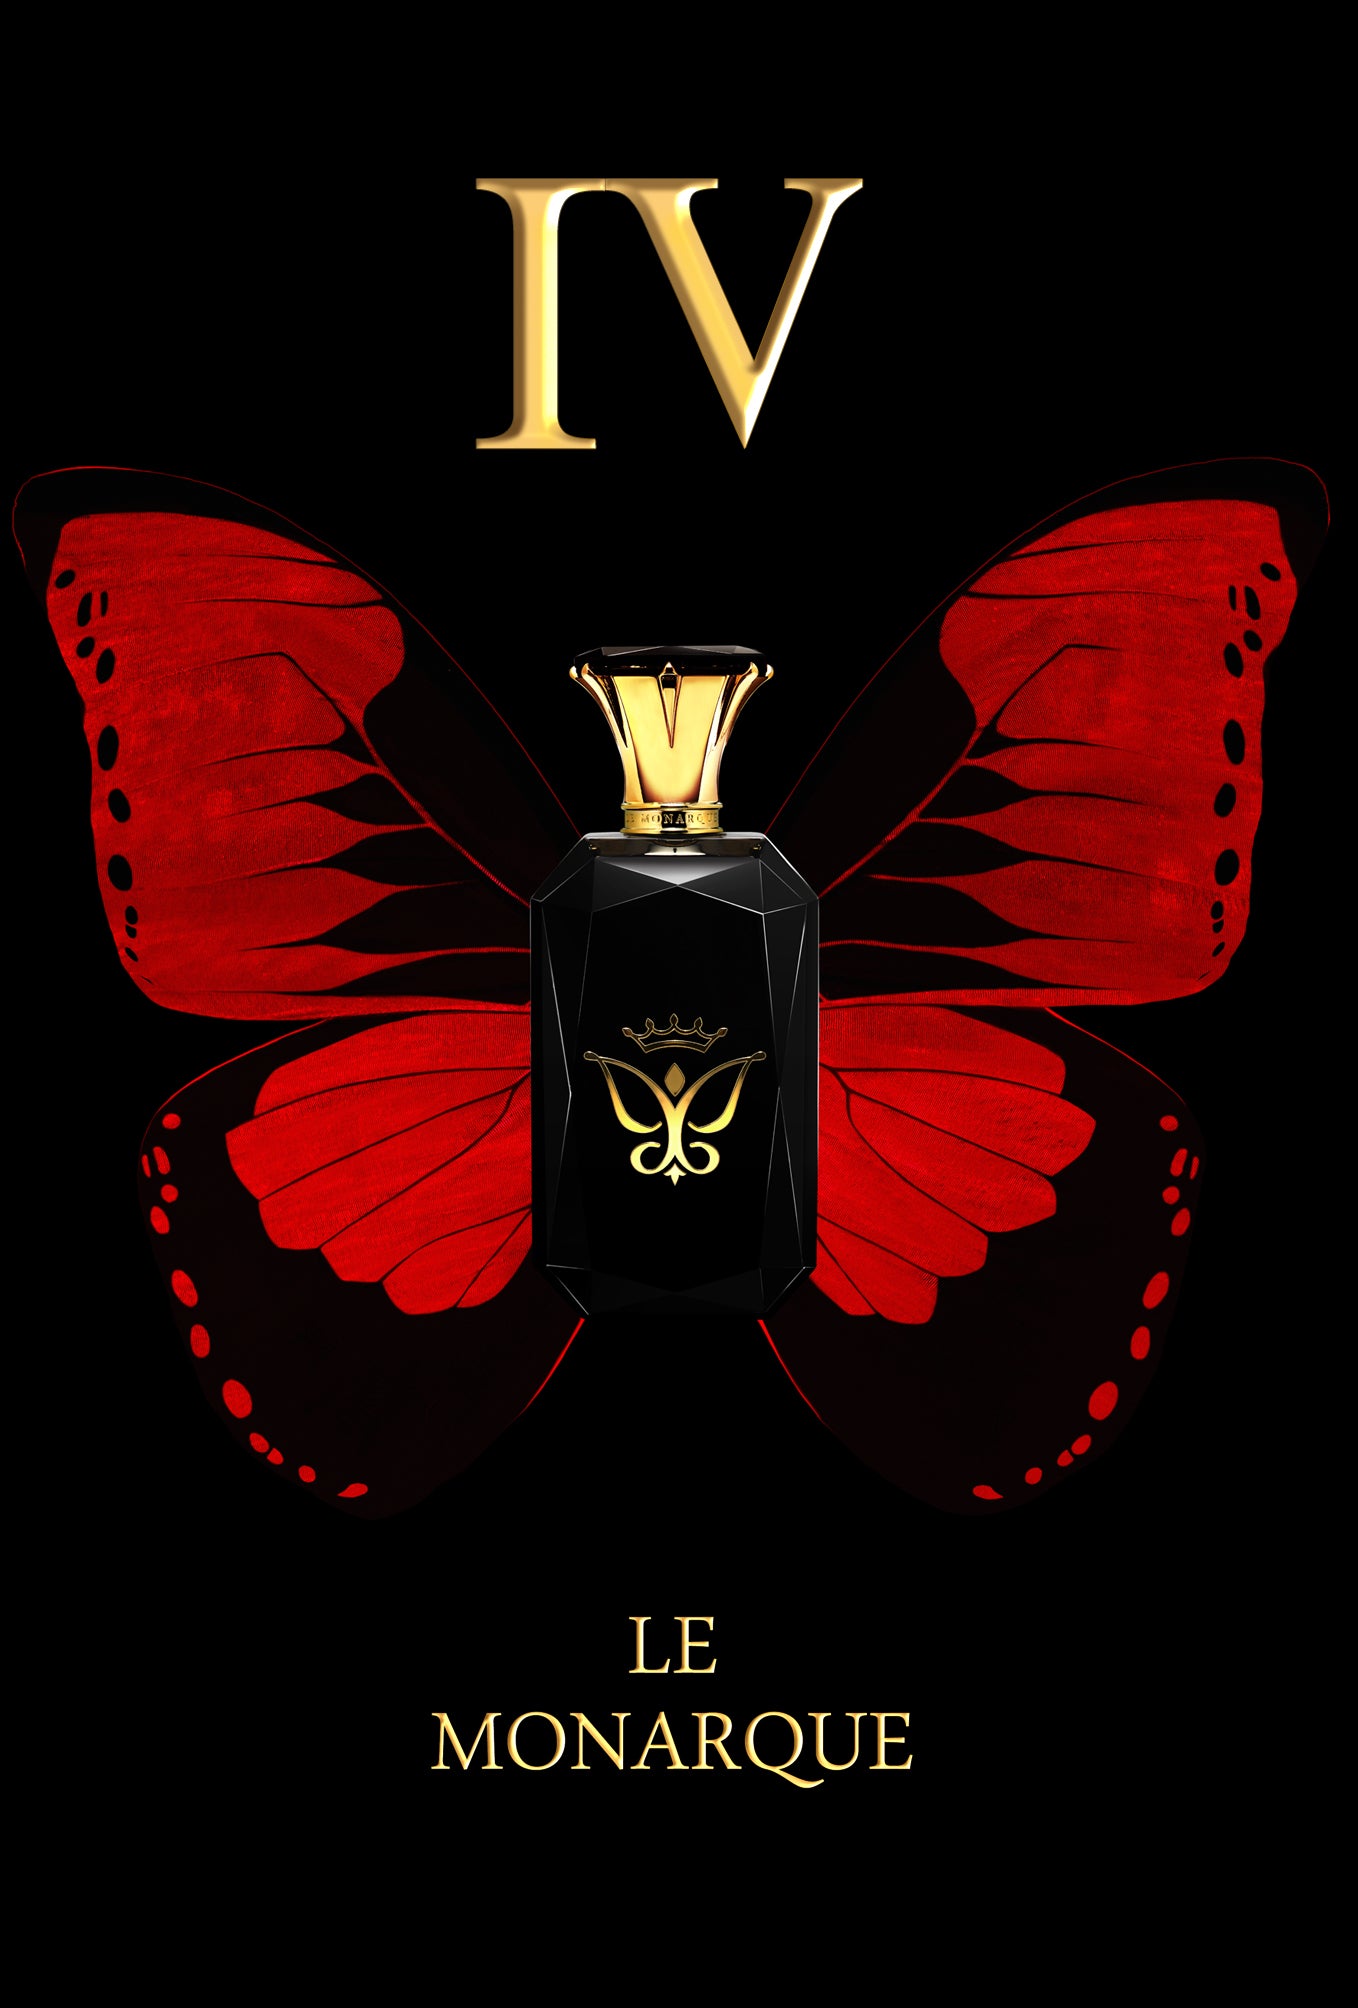 Le Monarque IV